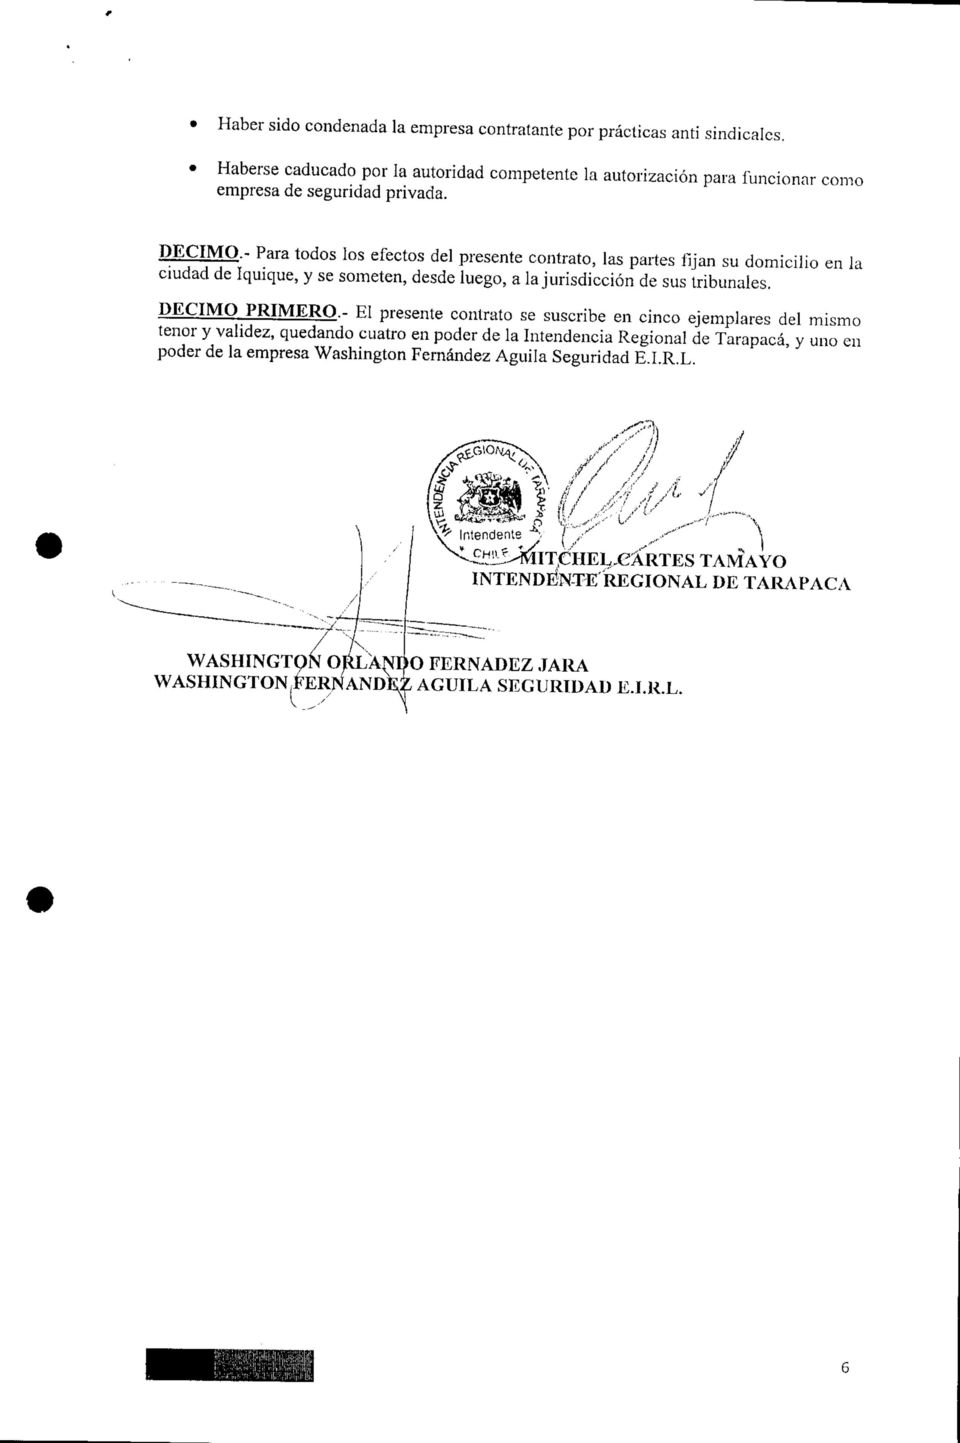 - Para todos los efectos del presente contrato, las partes fijan su domicilio en la ciudad de Iquique, y se someten, desde luego, a la jurisdicción de sus tribunales.